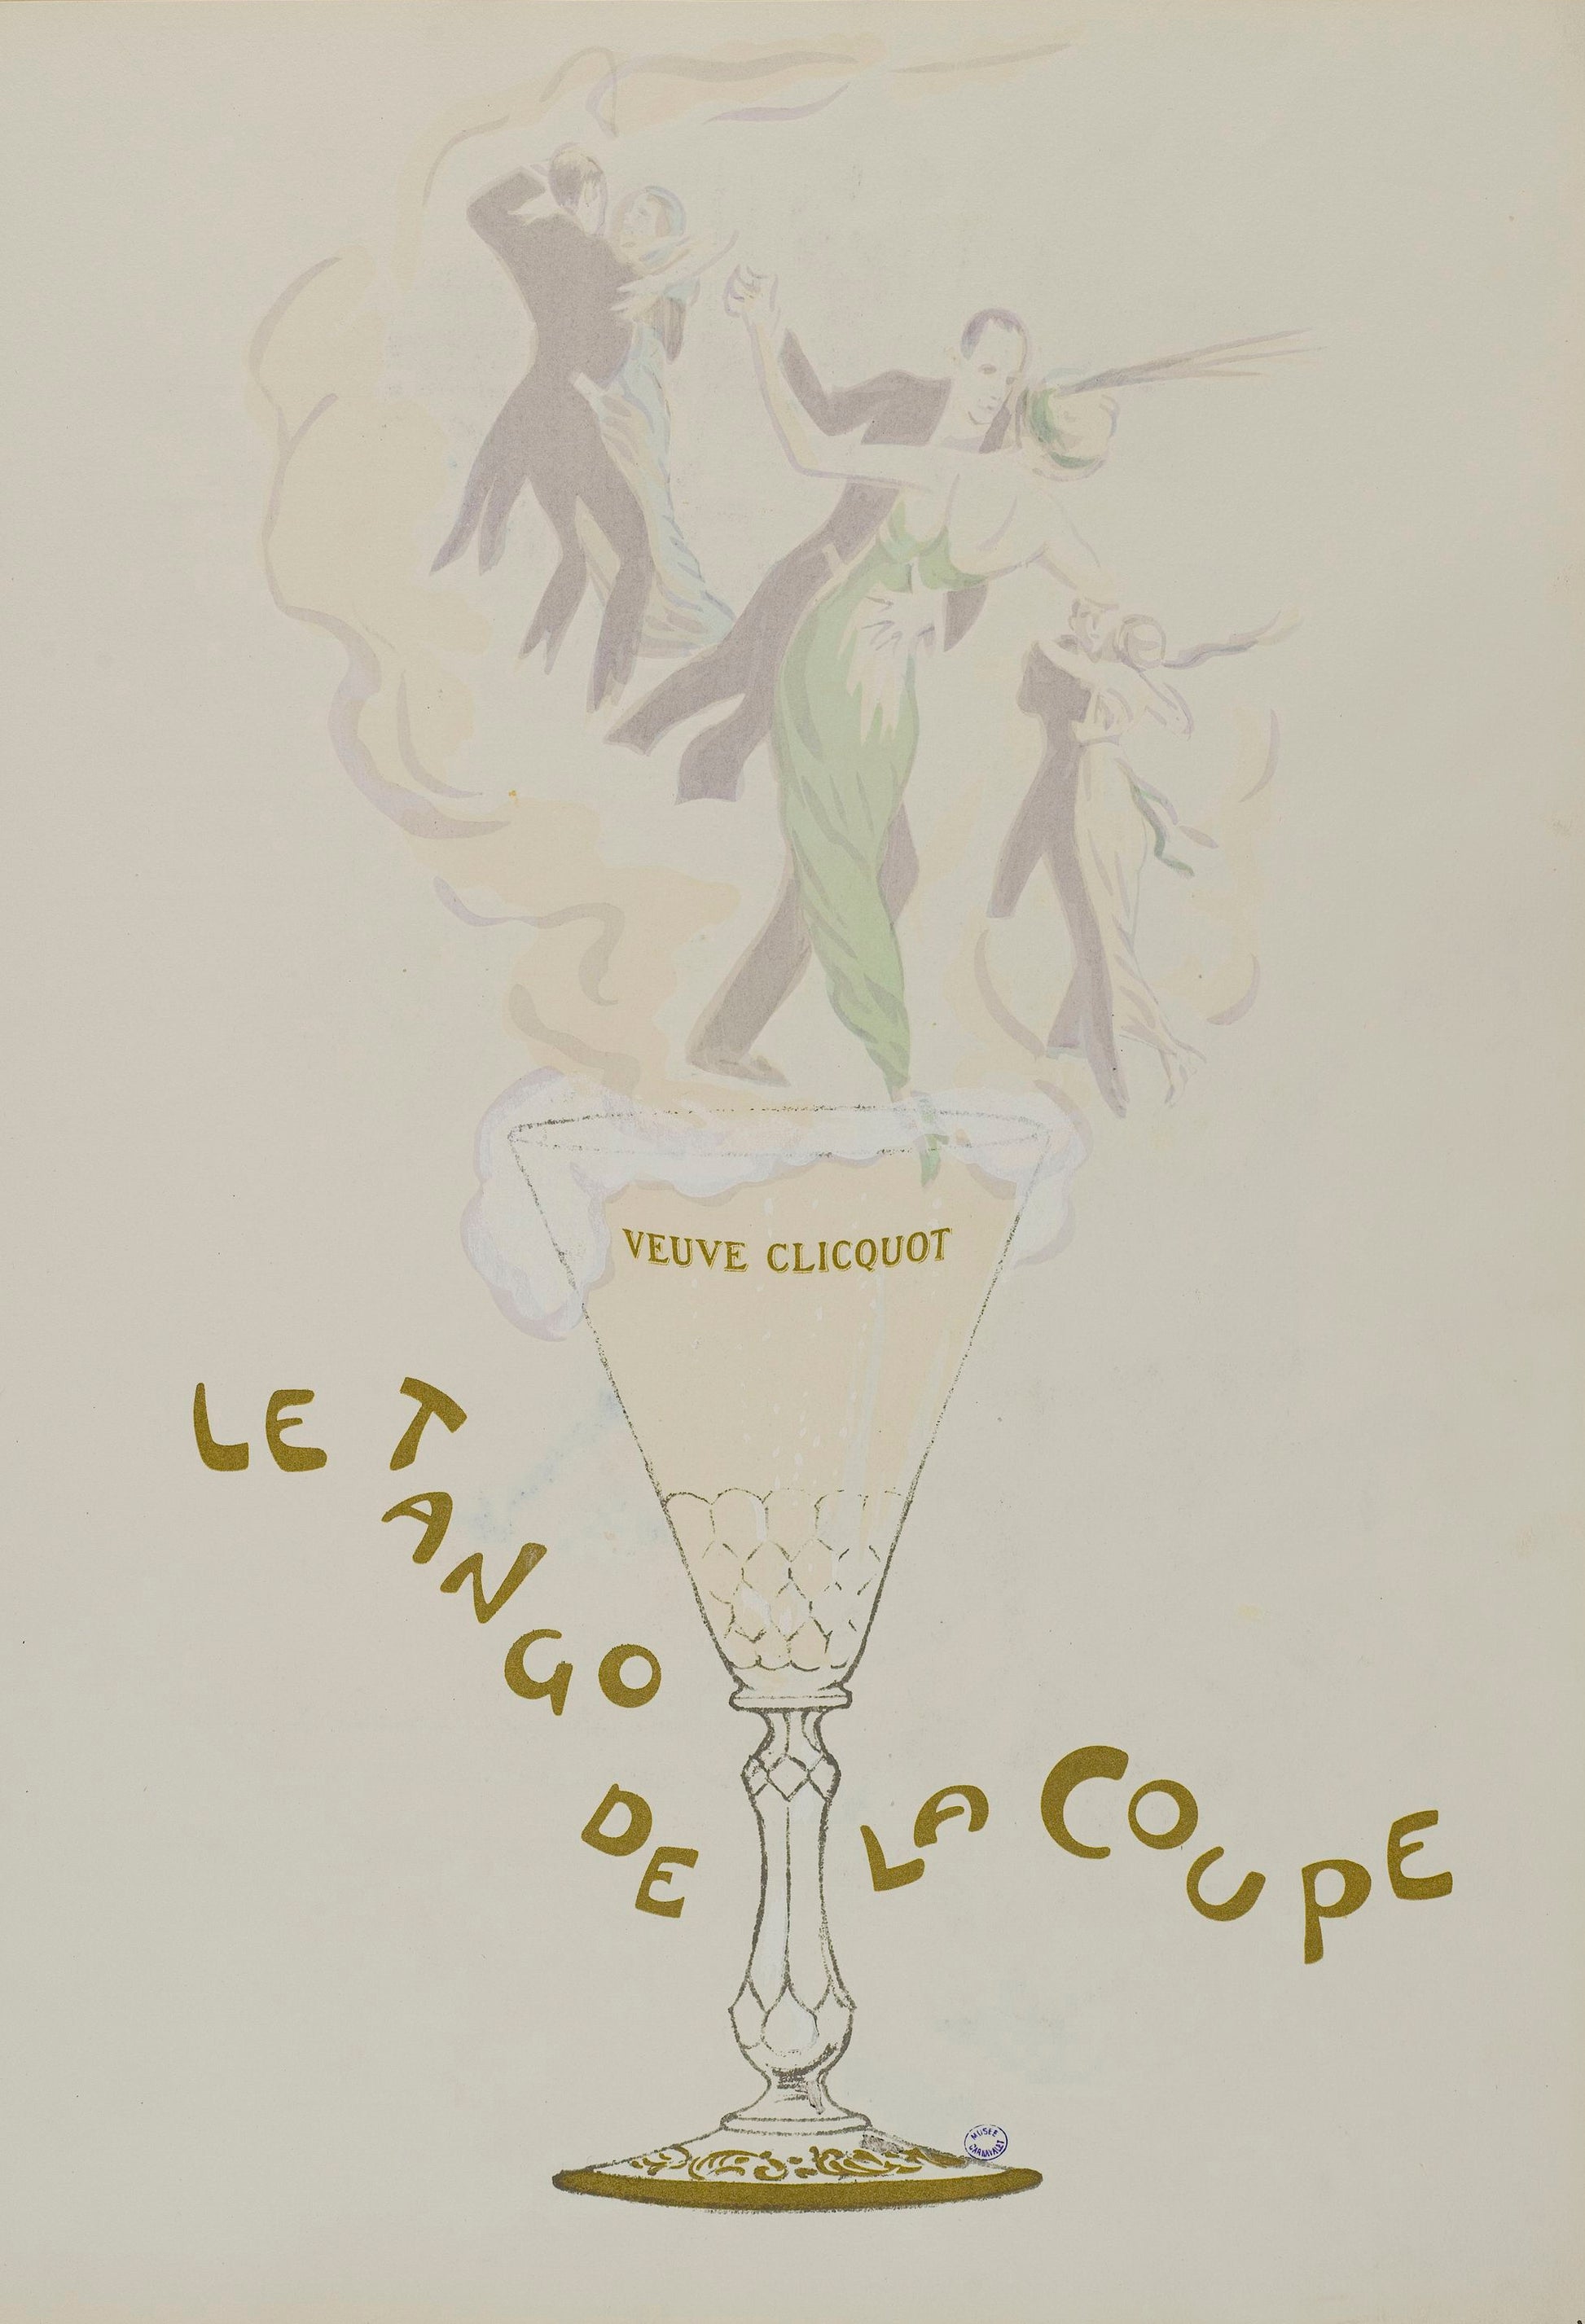 Vintage Veuve Clicquot Champagne poster “Le Tango de la coupe” (1900s) | Georges Goursat Posters, Prints, & Visual Artwork The Trumpet Shop   